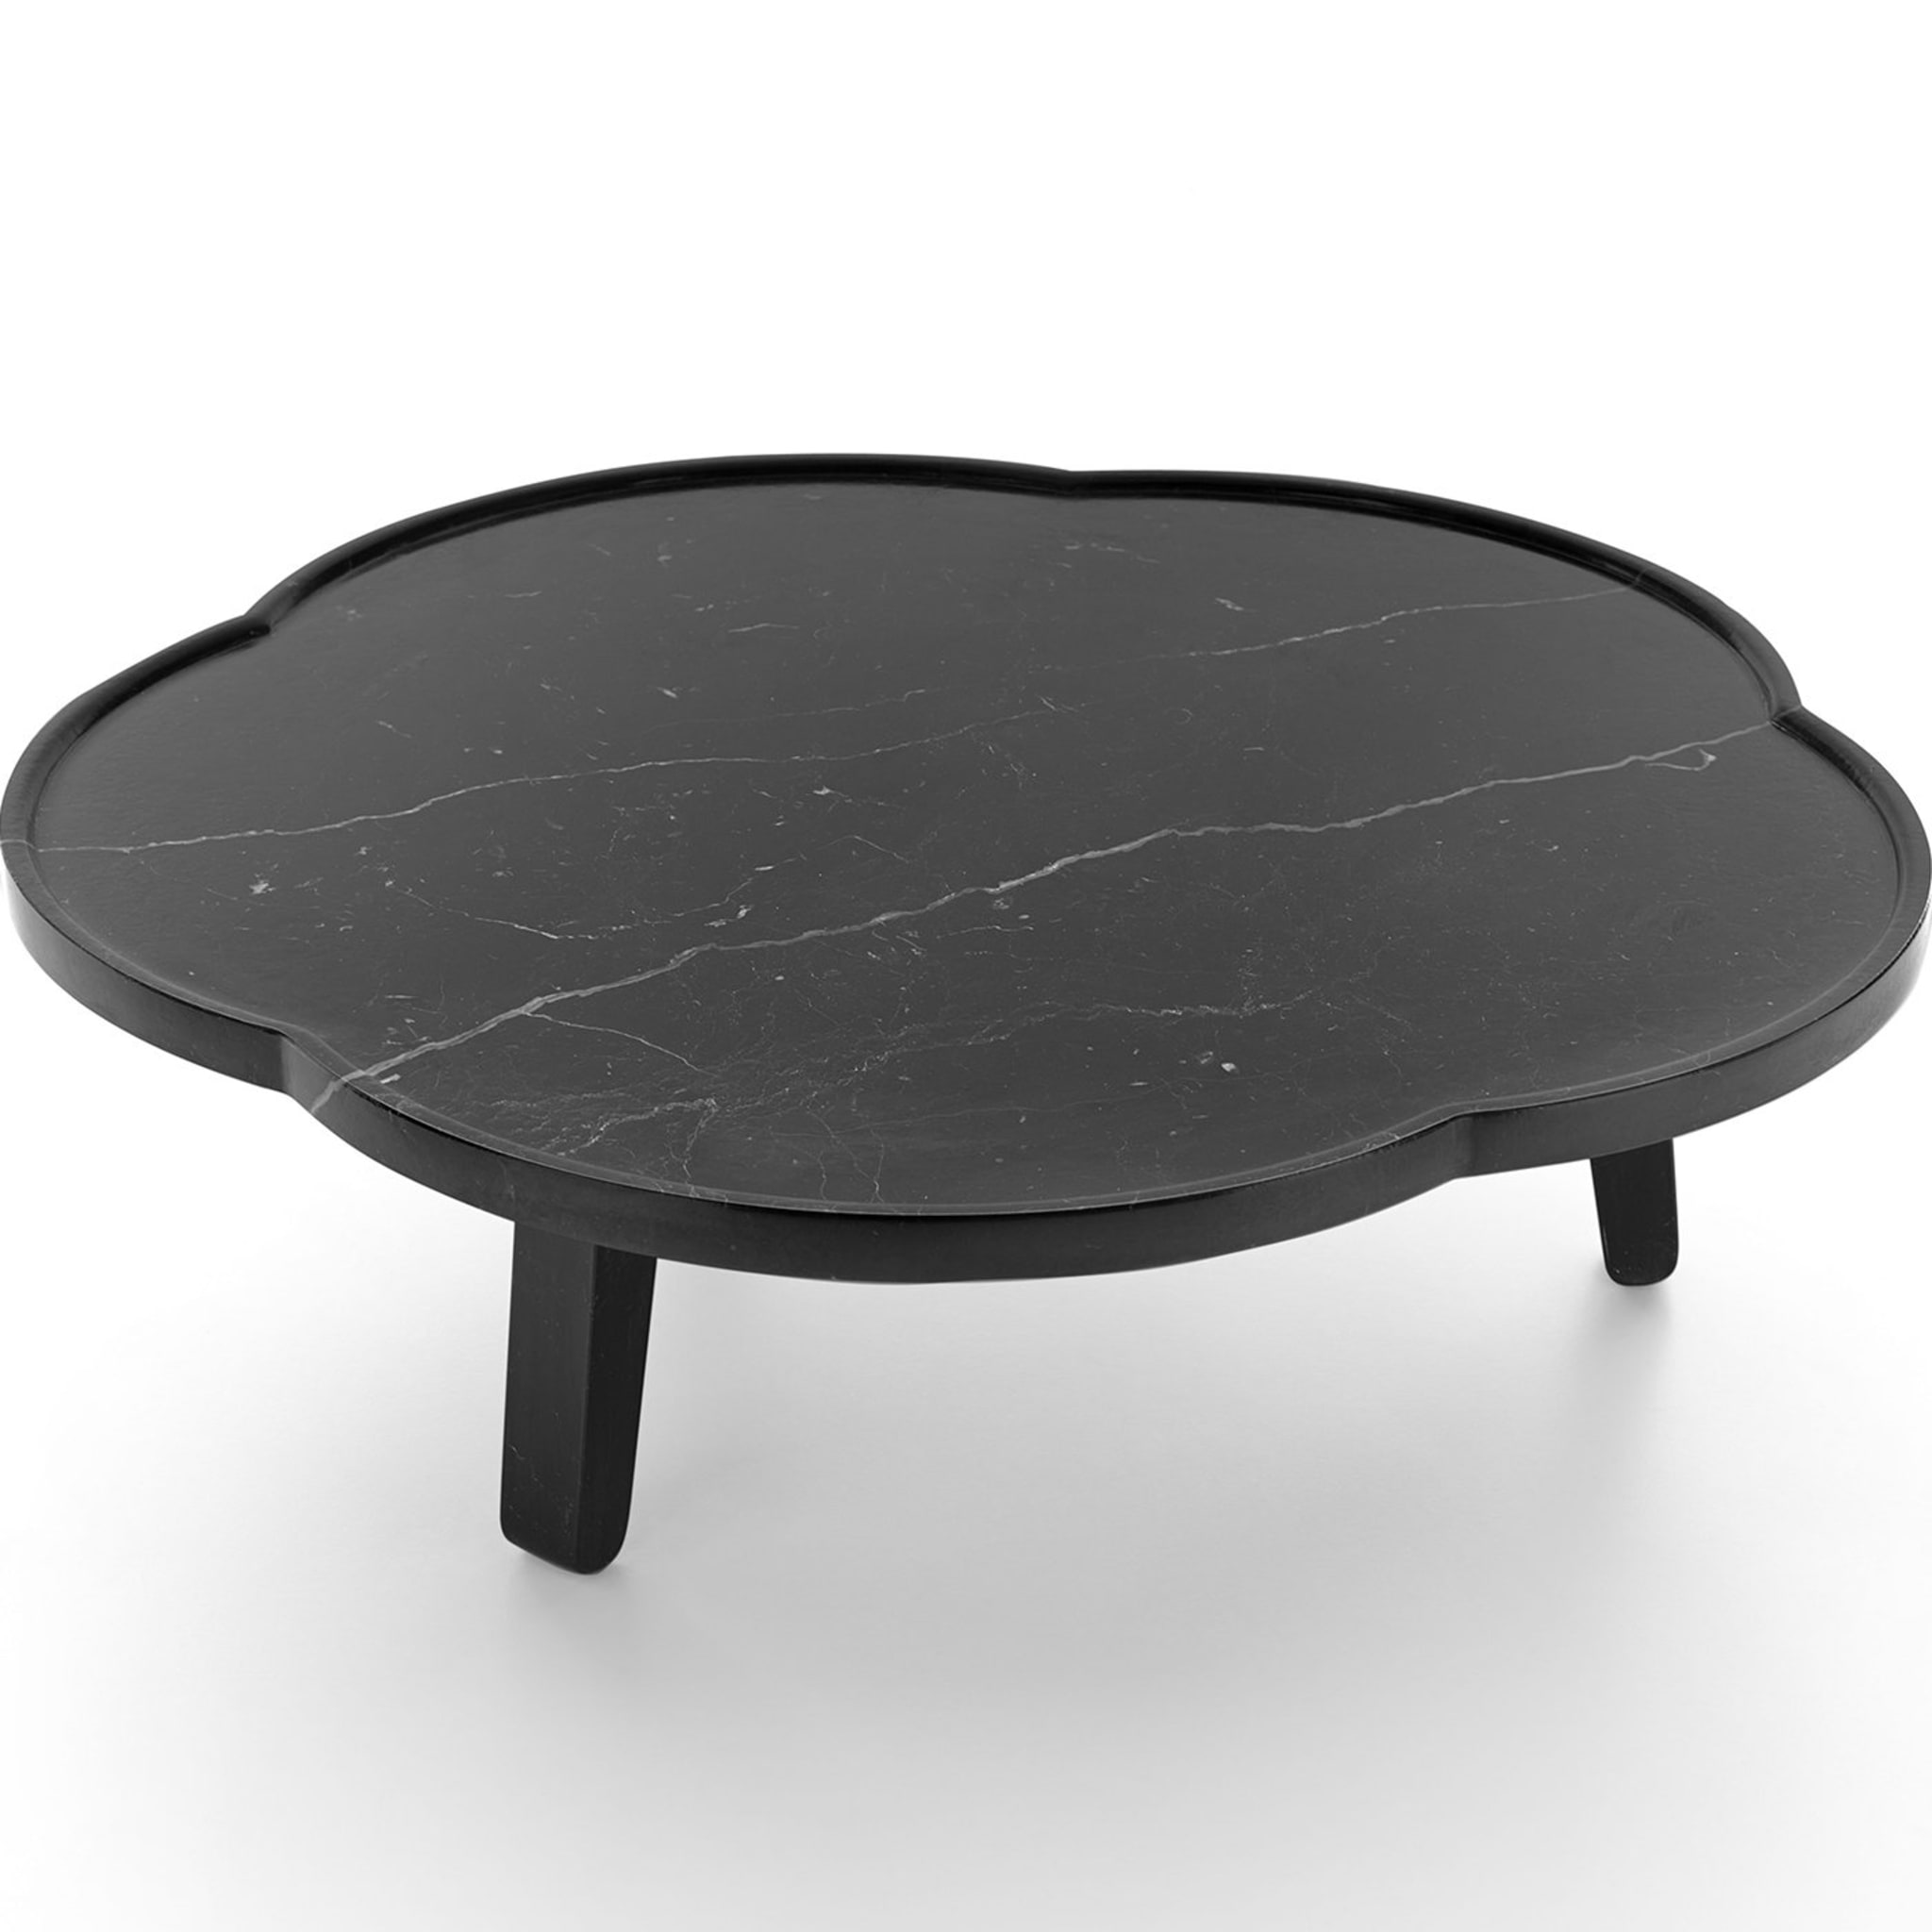 Black SOYA TRAY TABLE - Design Claesson Koivisto Rune 2011 - Alternative view 1